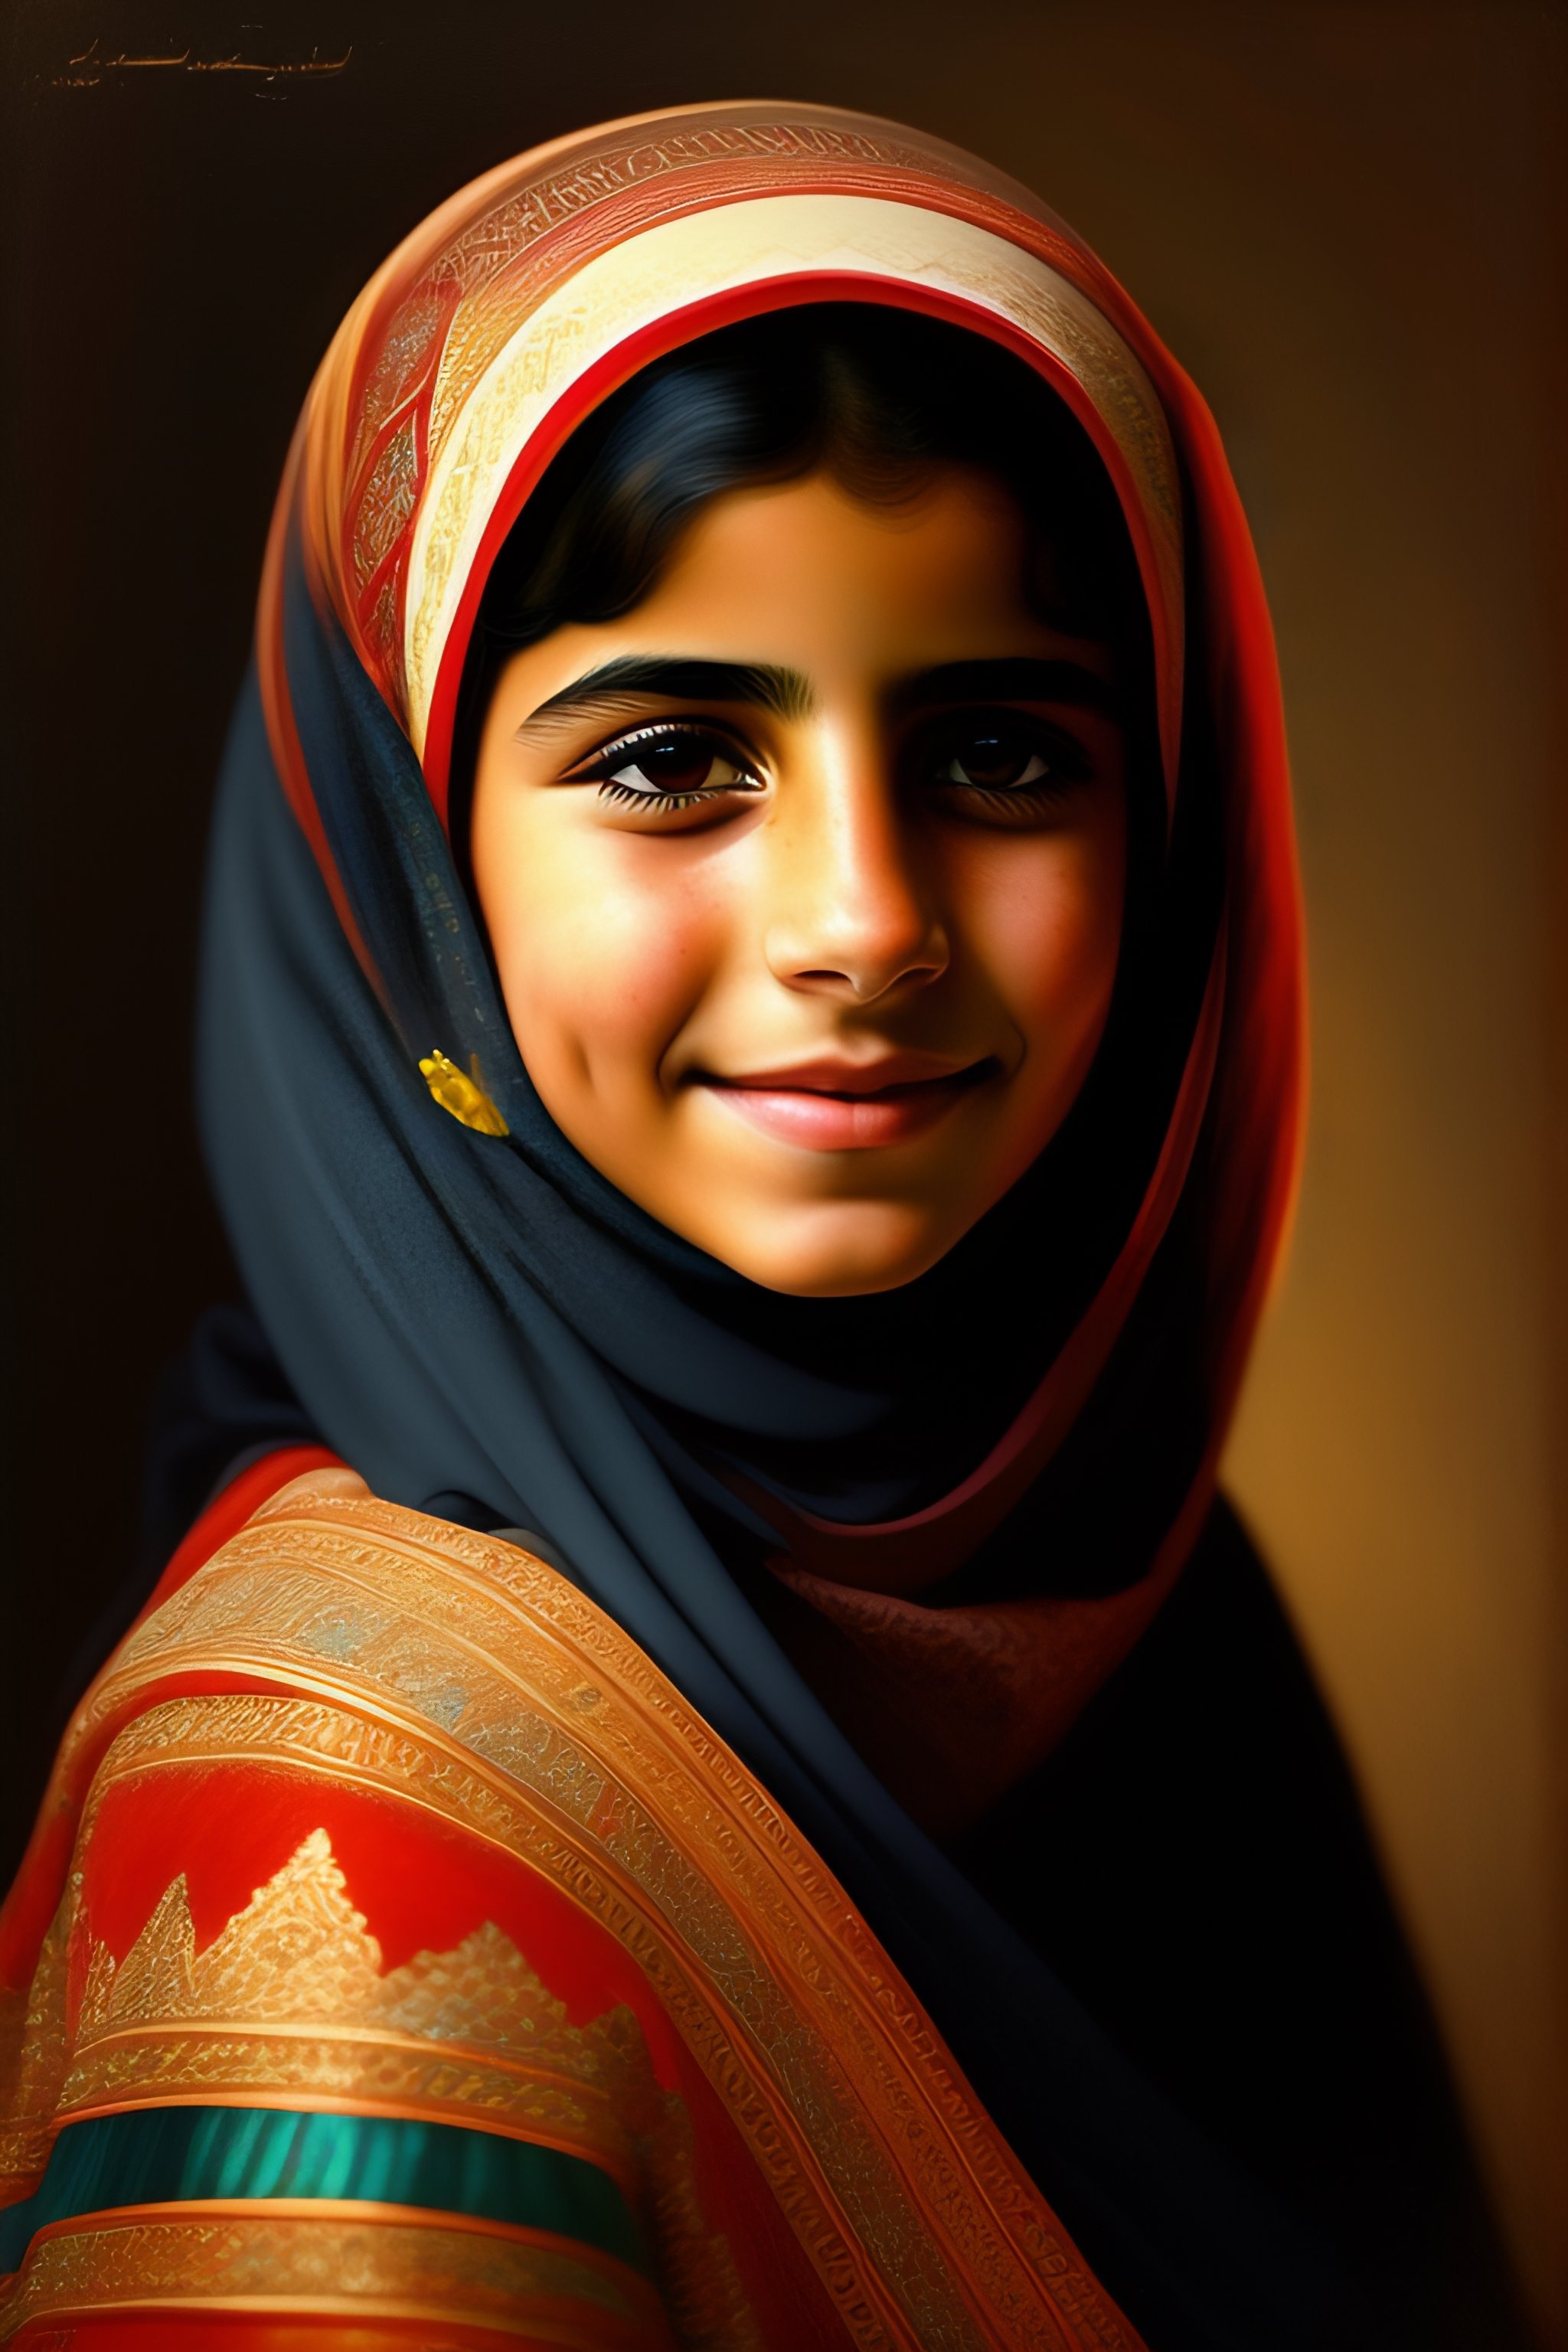 Lexica - An Arabic girl with a veil